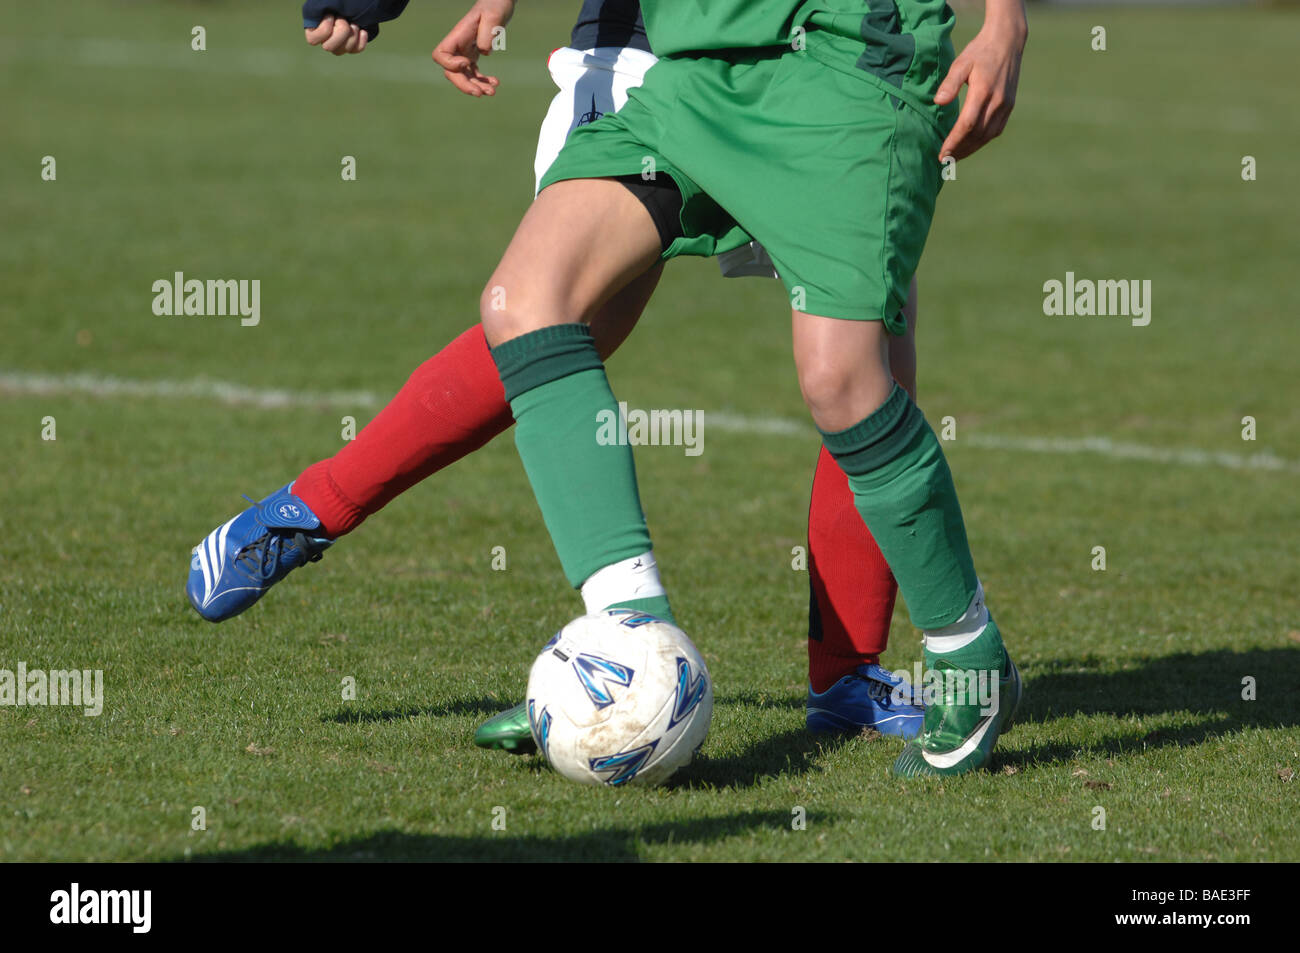 Dettaglio di due calciatori gambe e piedi con calcio. Foto Stock